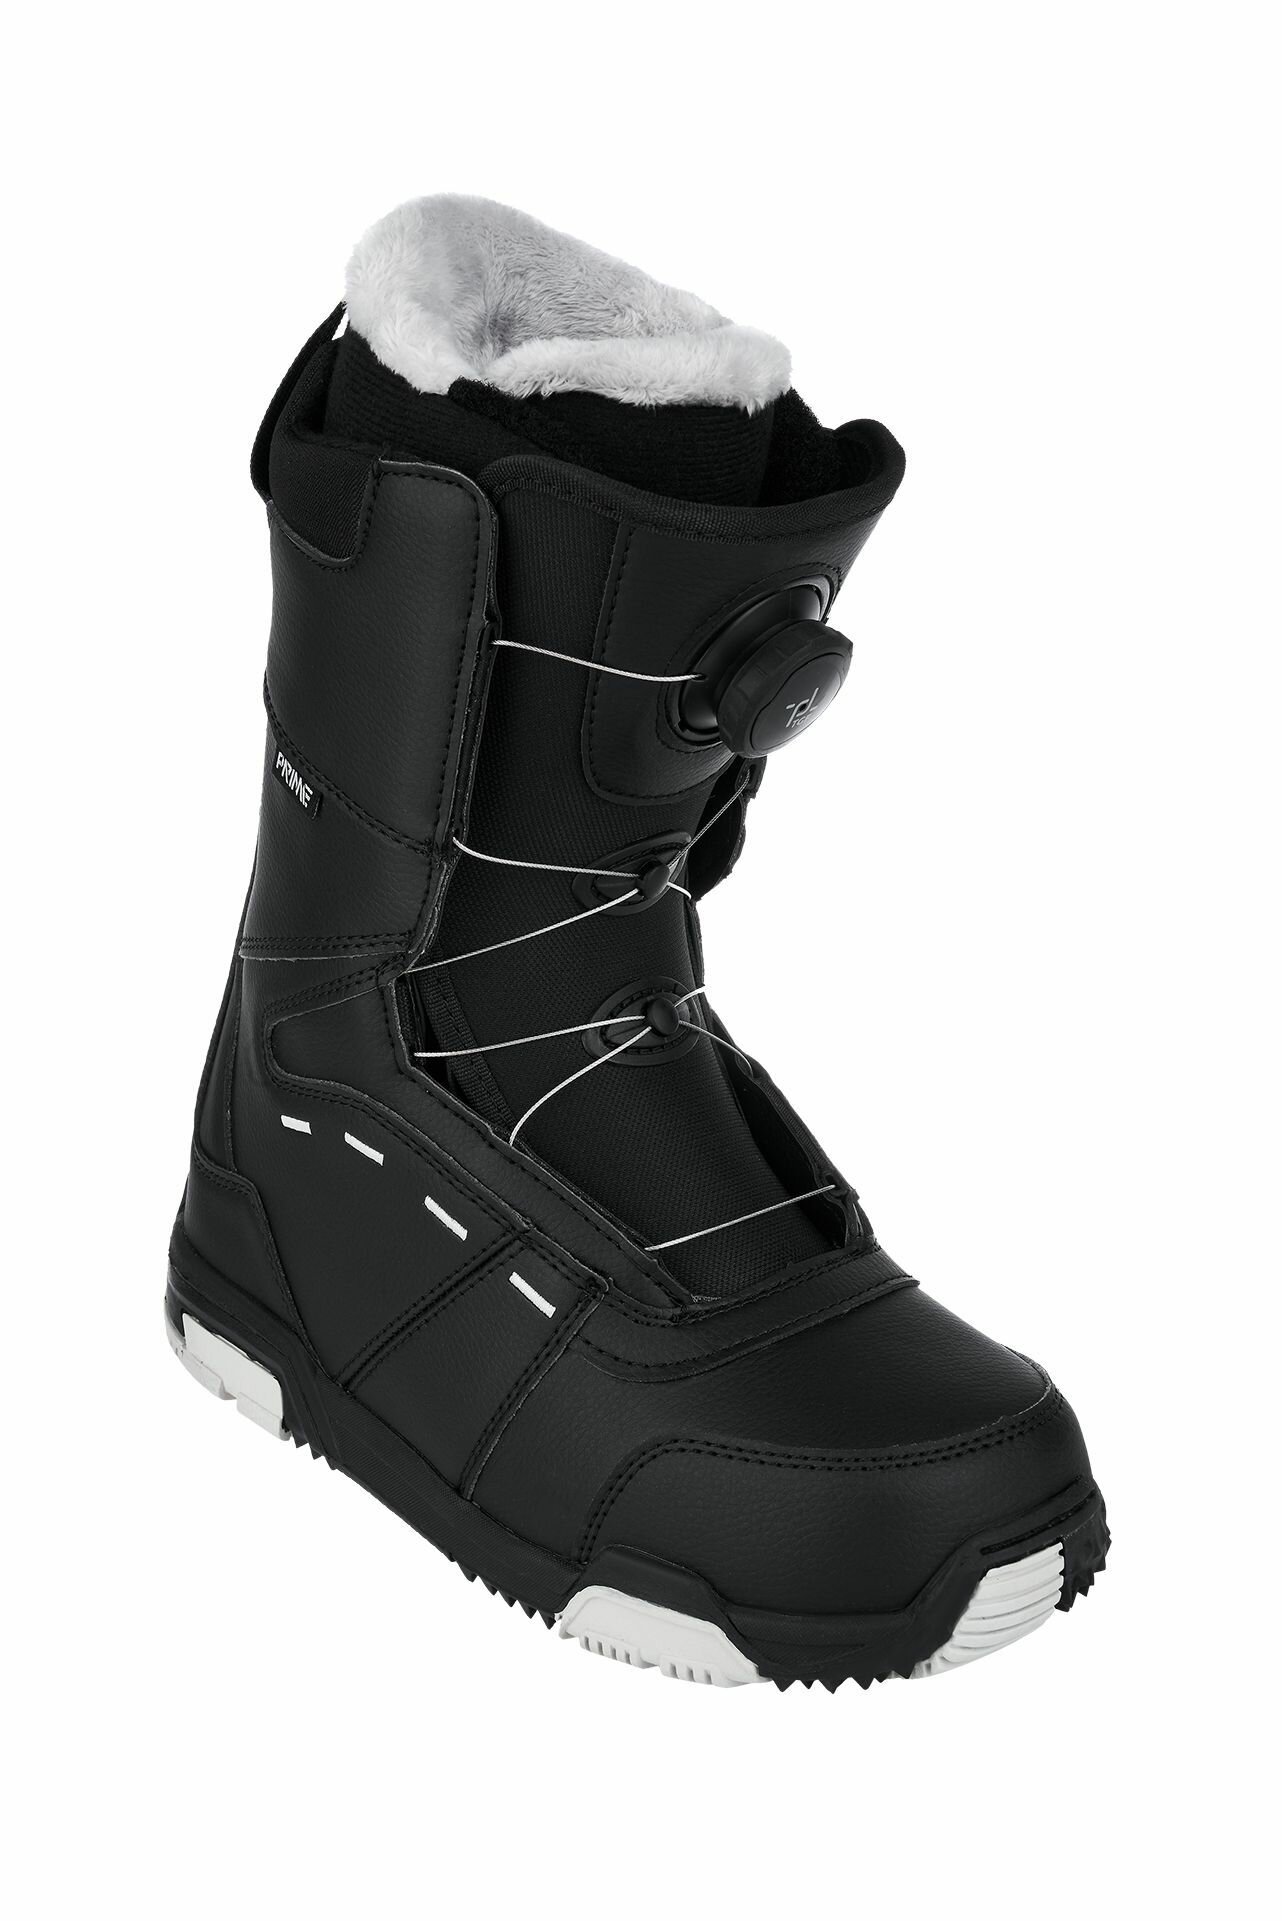 Ботинки сноубордические PRIME COOL-C1 TGF Black (быстрая шнуровка) (45 RU / 30 cm)